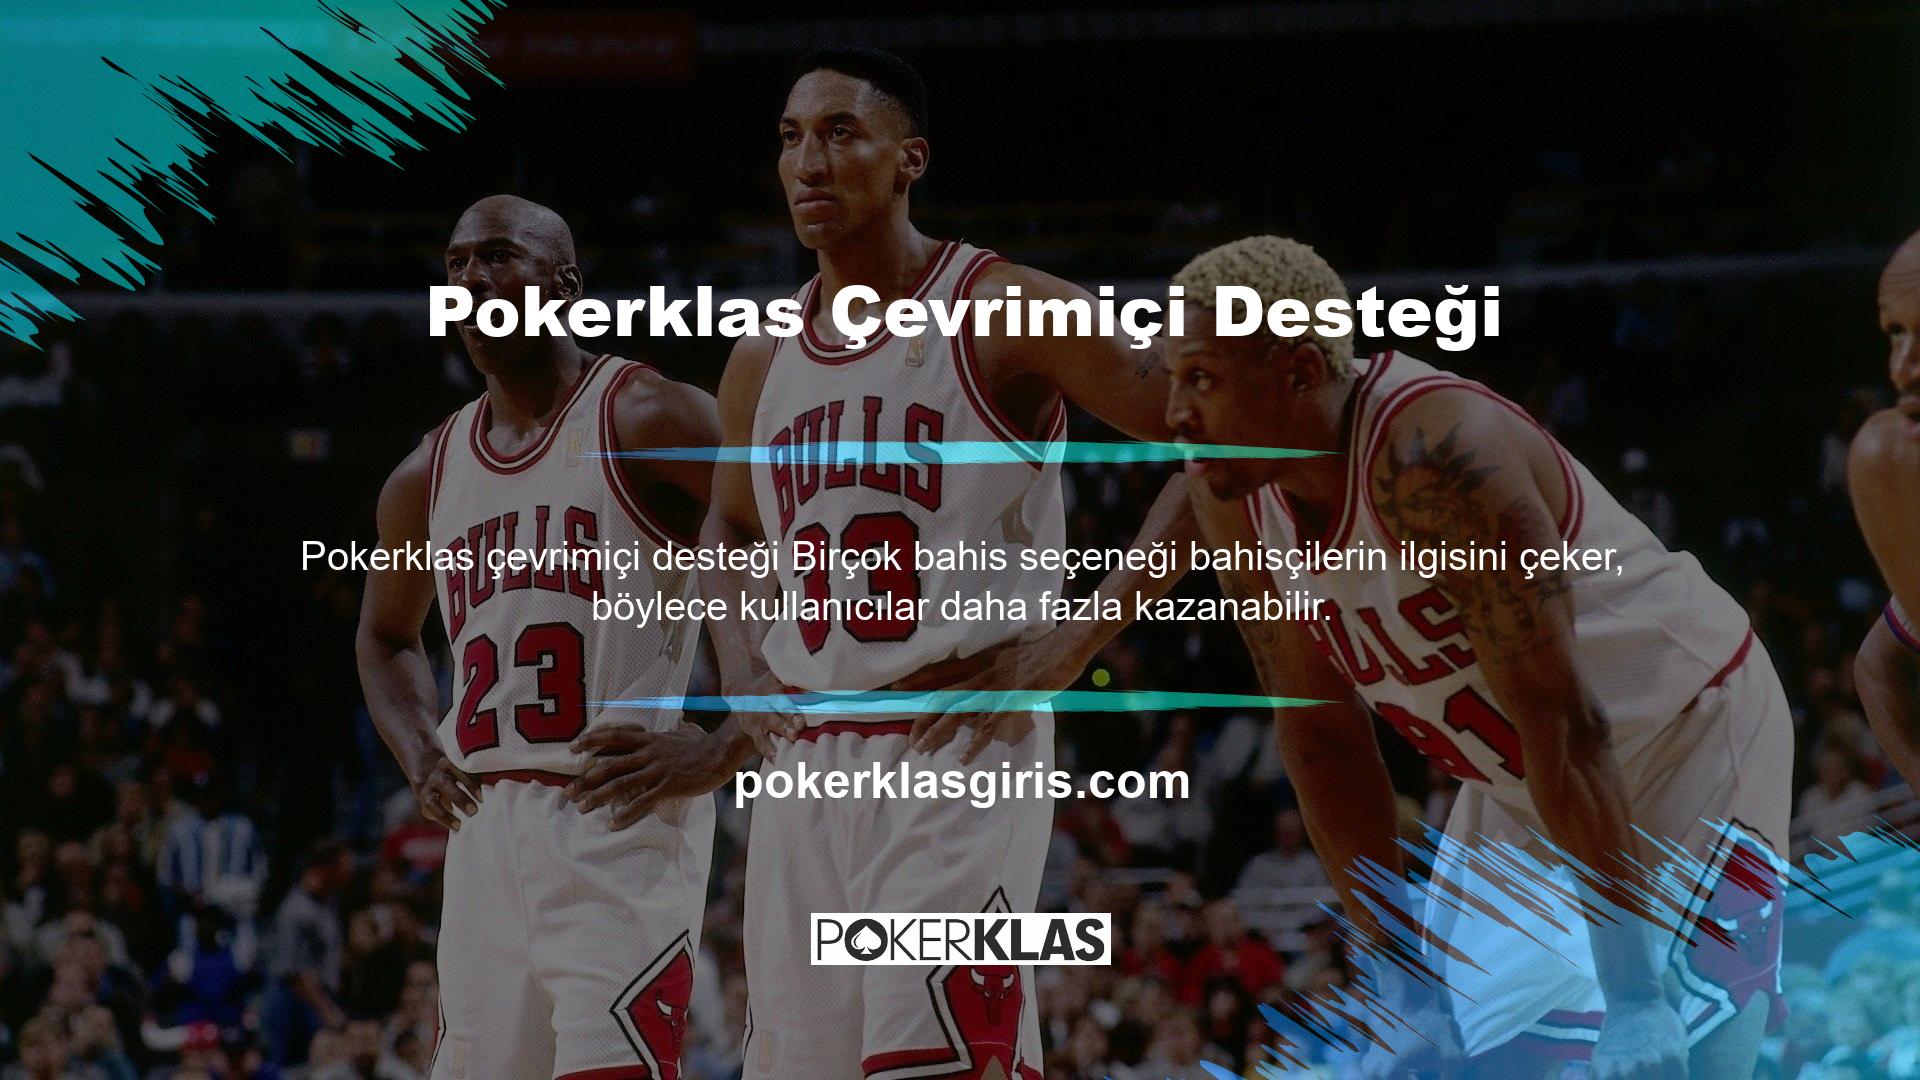 Pokerklas Yasadışı Casino Sitesi, bahis tutkunları için çok çeşitli oyunlara ve bonus seçeneklerine kolay erişim sağlayan bir bahis sitesidir